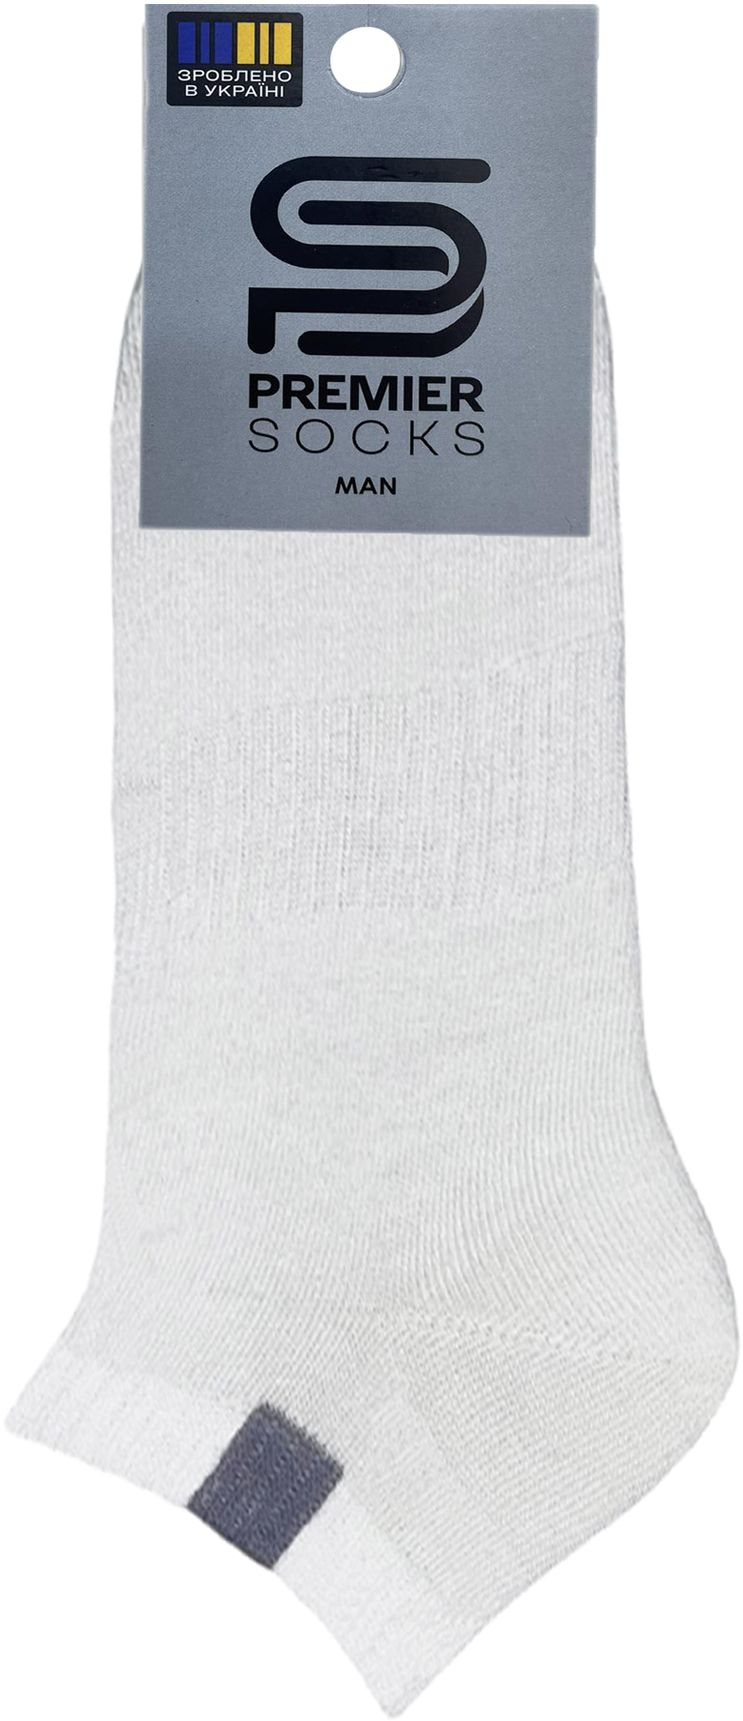 Шкарпетки чоловічі Premier Socks 44-45 1 пара білі (4820163318356)фото2